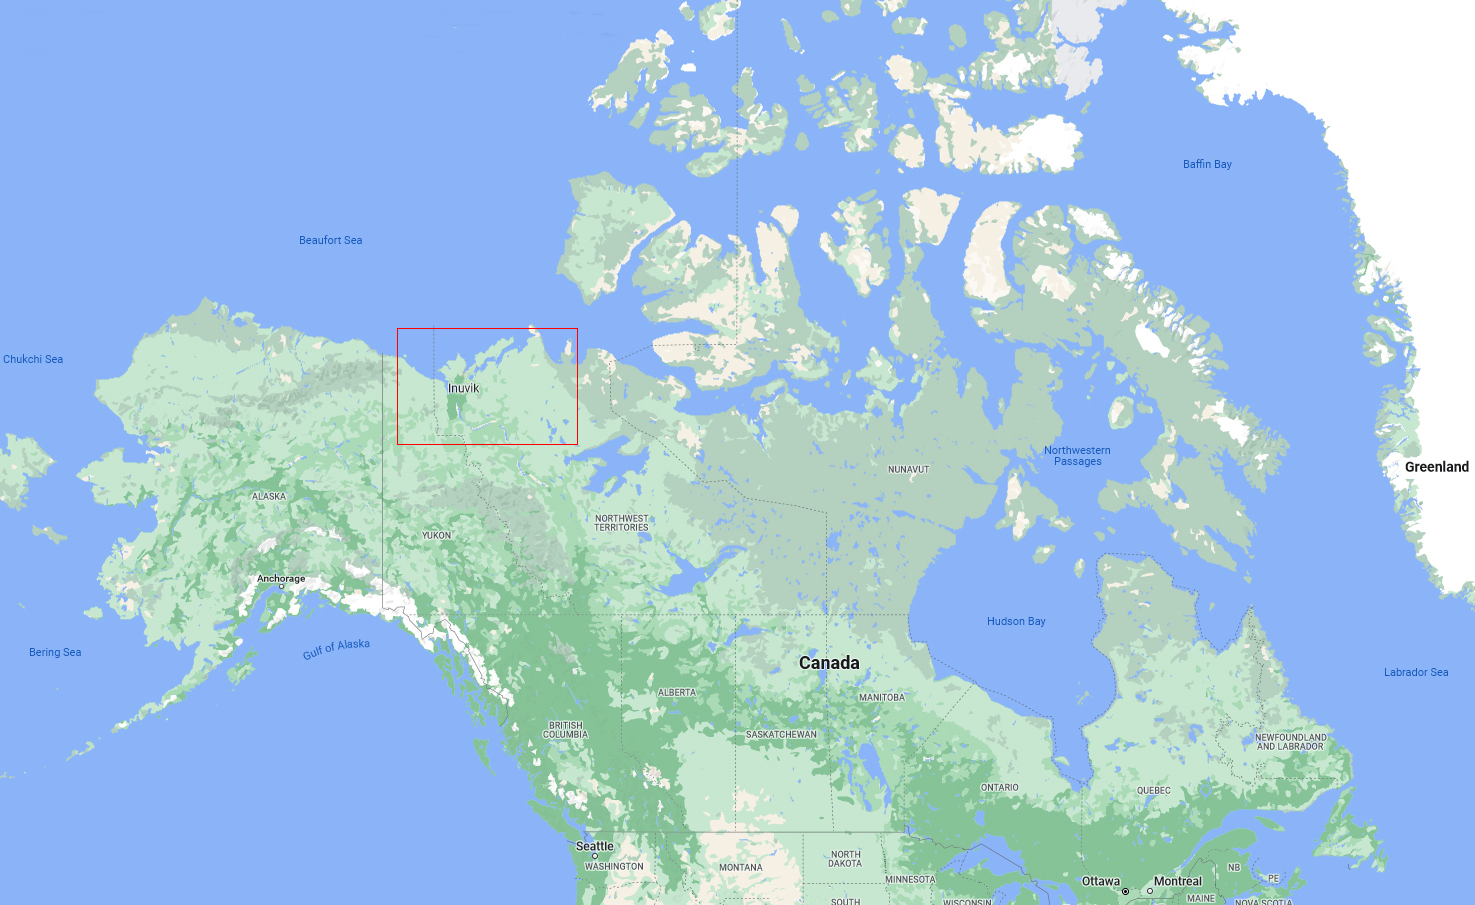 Canada, région Inuvialuit indiquée dans le rectangle rouge
Keywords: inuvaluit;inuit;inuit du canada